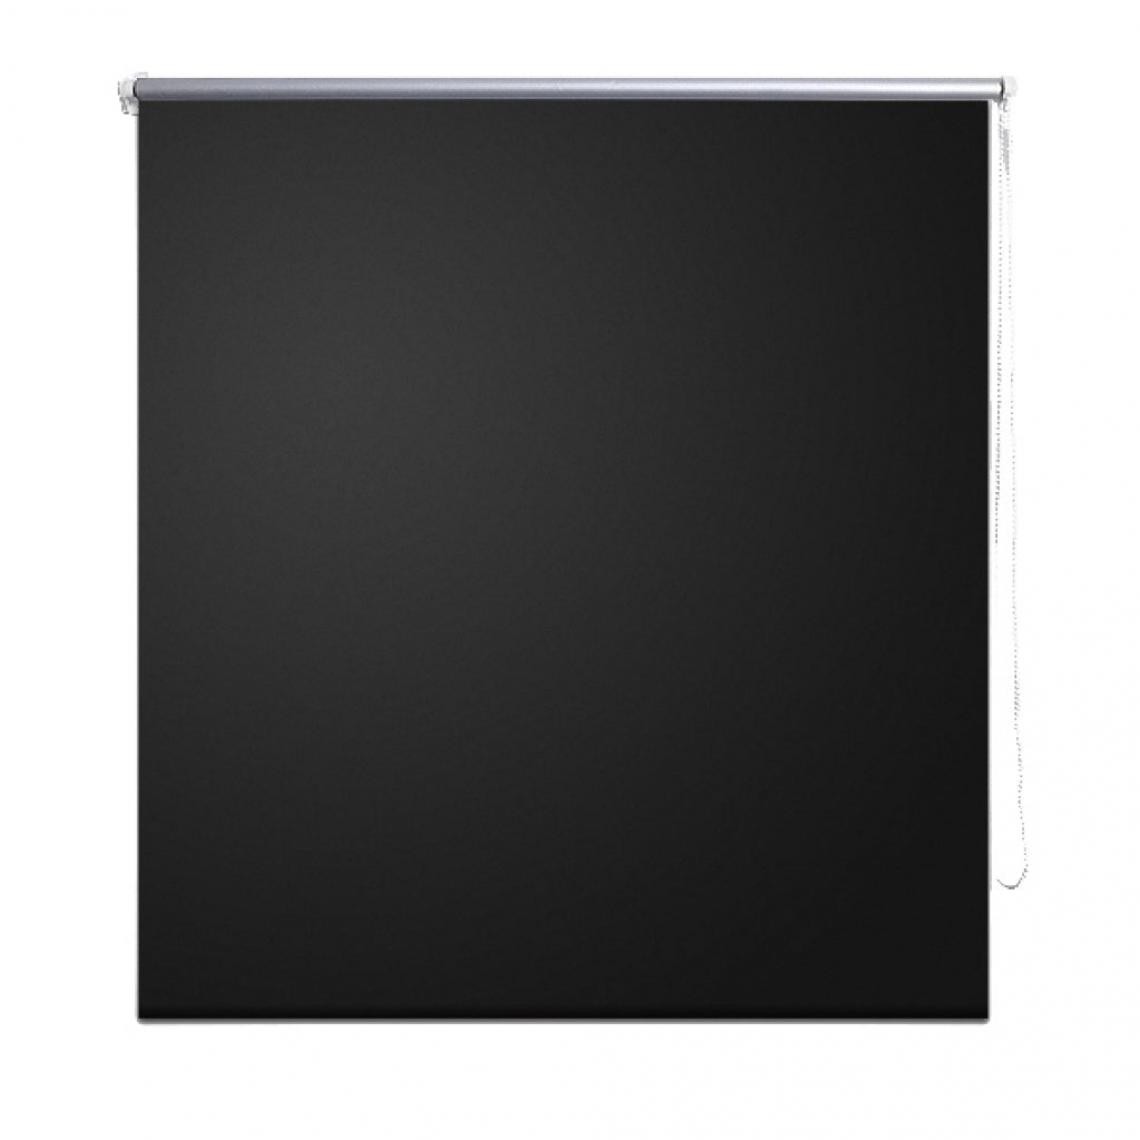 Helloshop26 - Store enrouleur occultant 100 x 175 cm fenêtre rideau pare-vue volet roulant noir 4102016/2 - Store compatible Velux